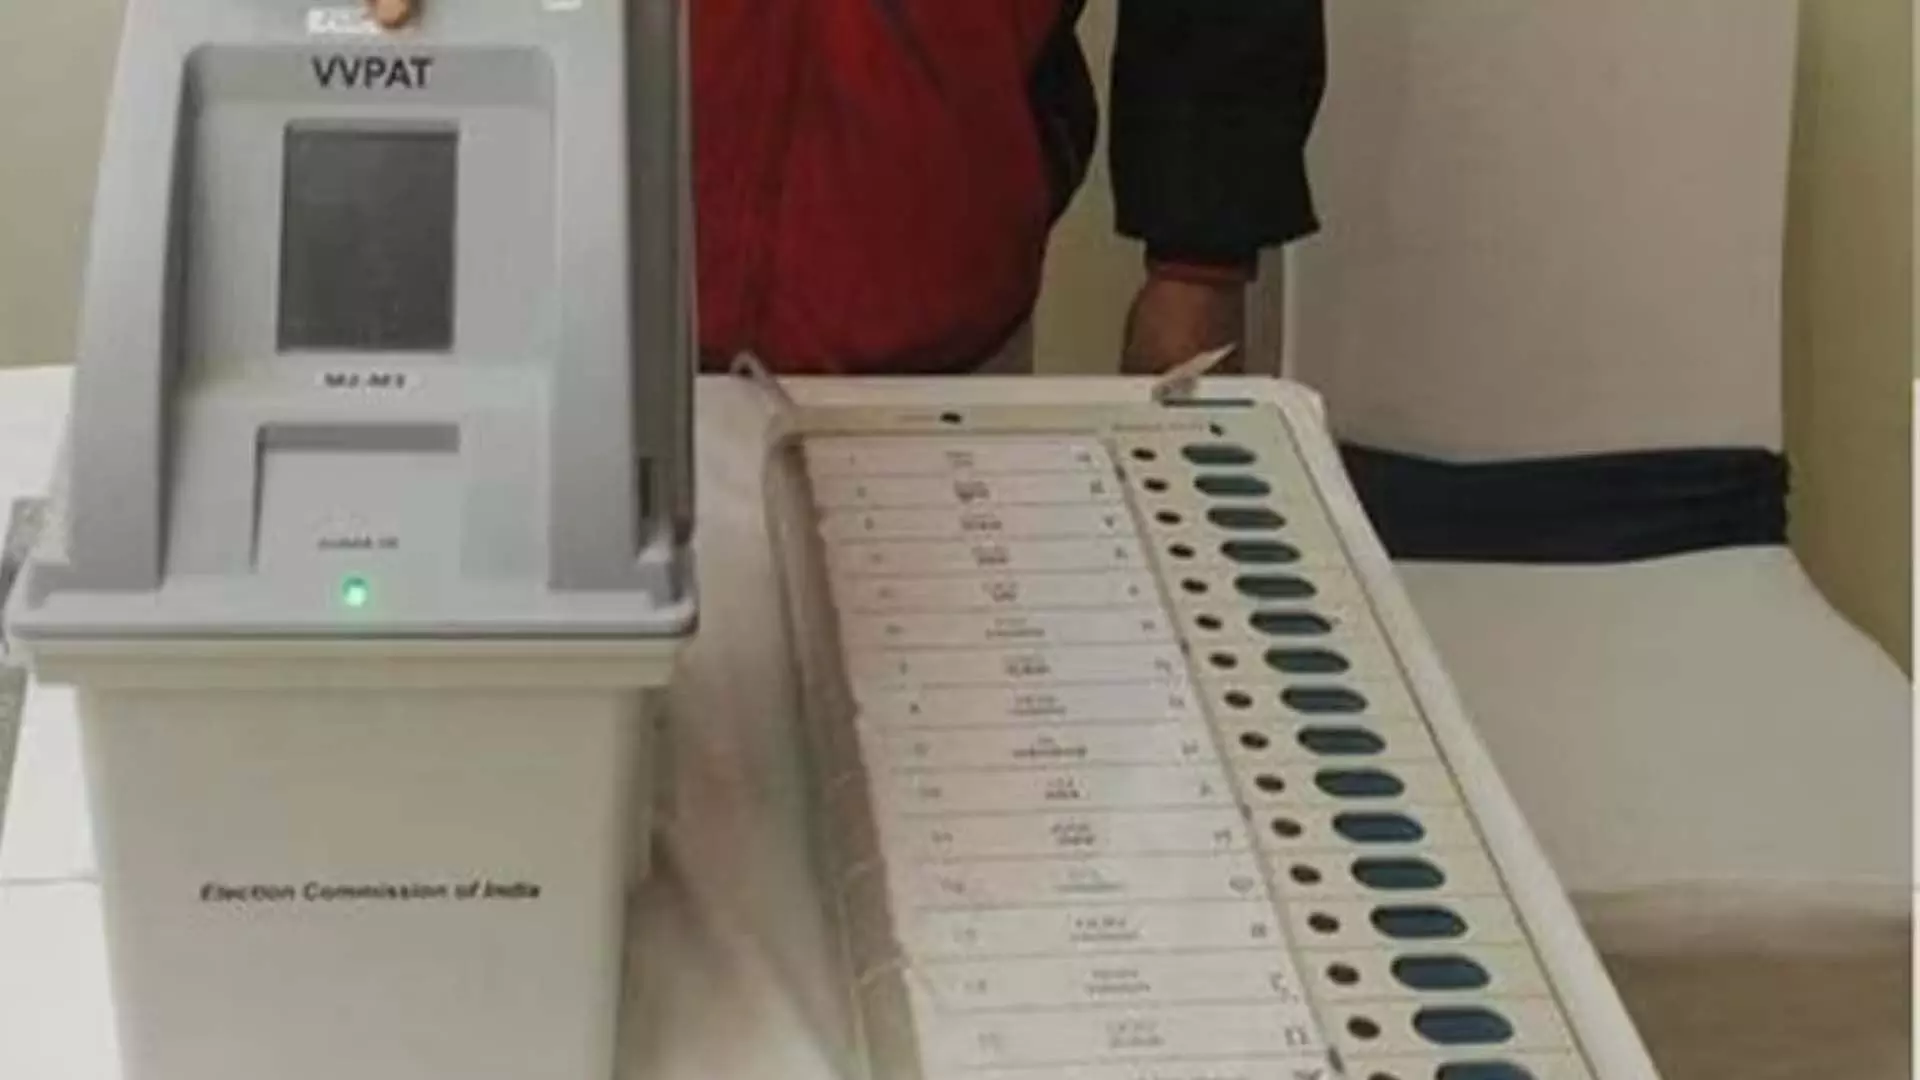 केरल चुनाव आयोग के अधिकारी ने मॉक पोल के दौरान विपक्ष के अतिरिक्त भाजपा वोट के दावे का जवाब दिया